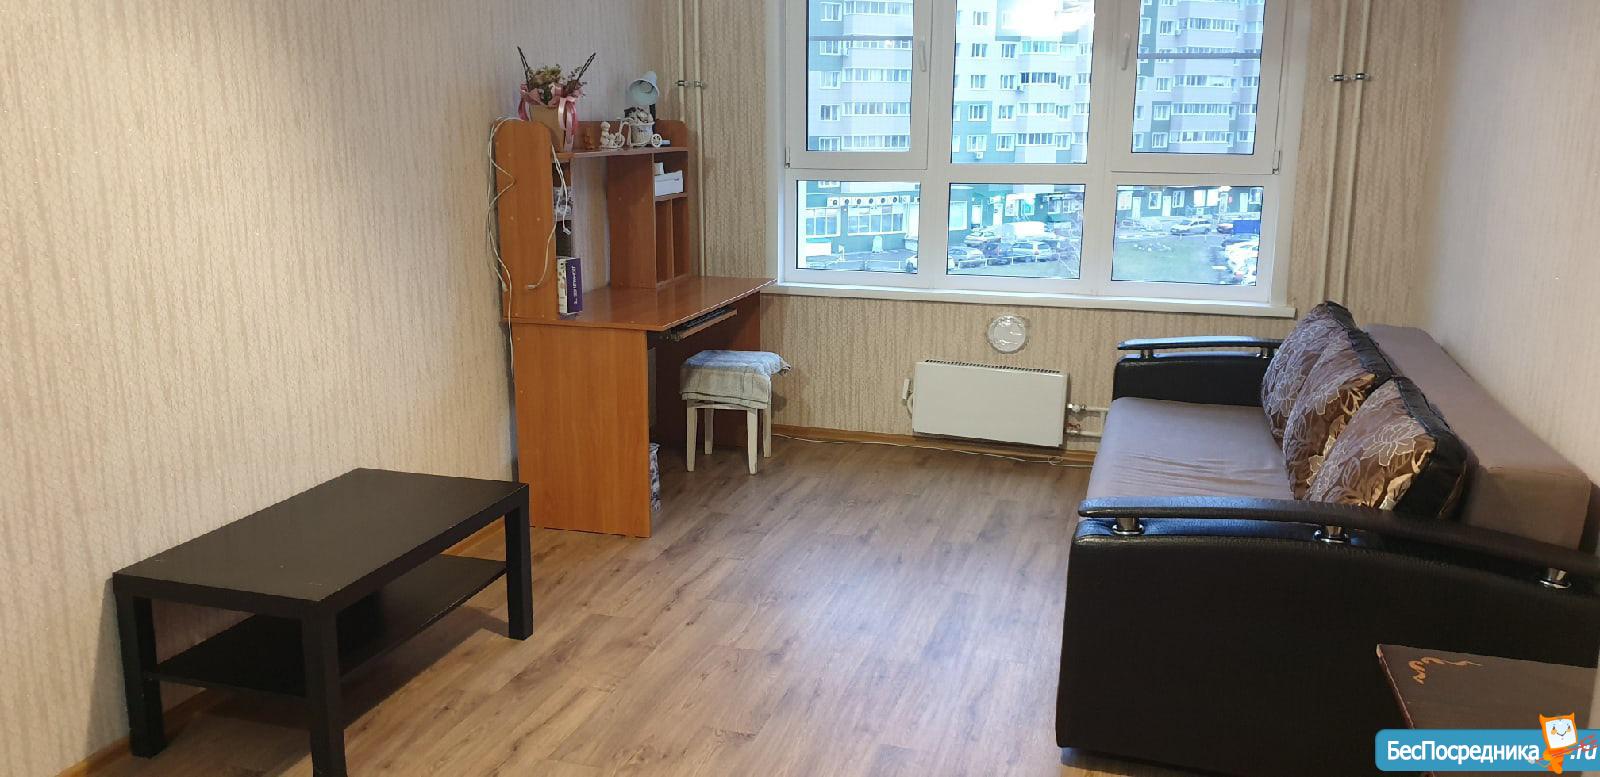 Снять квартиру на длительный срок в Ставрополе до 16.000 3 комнатную